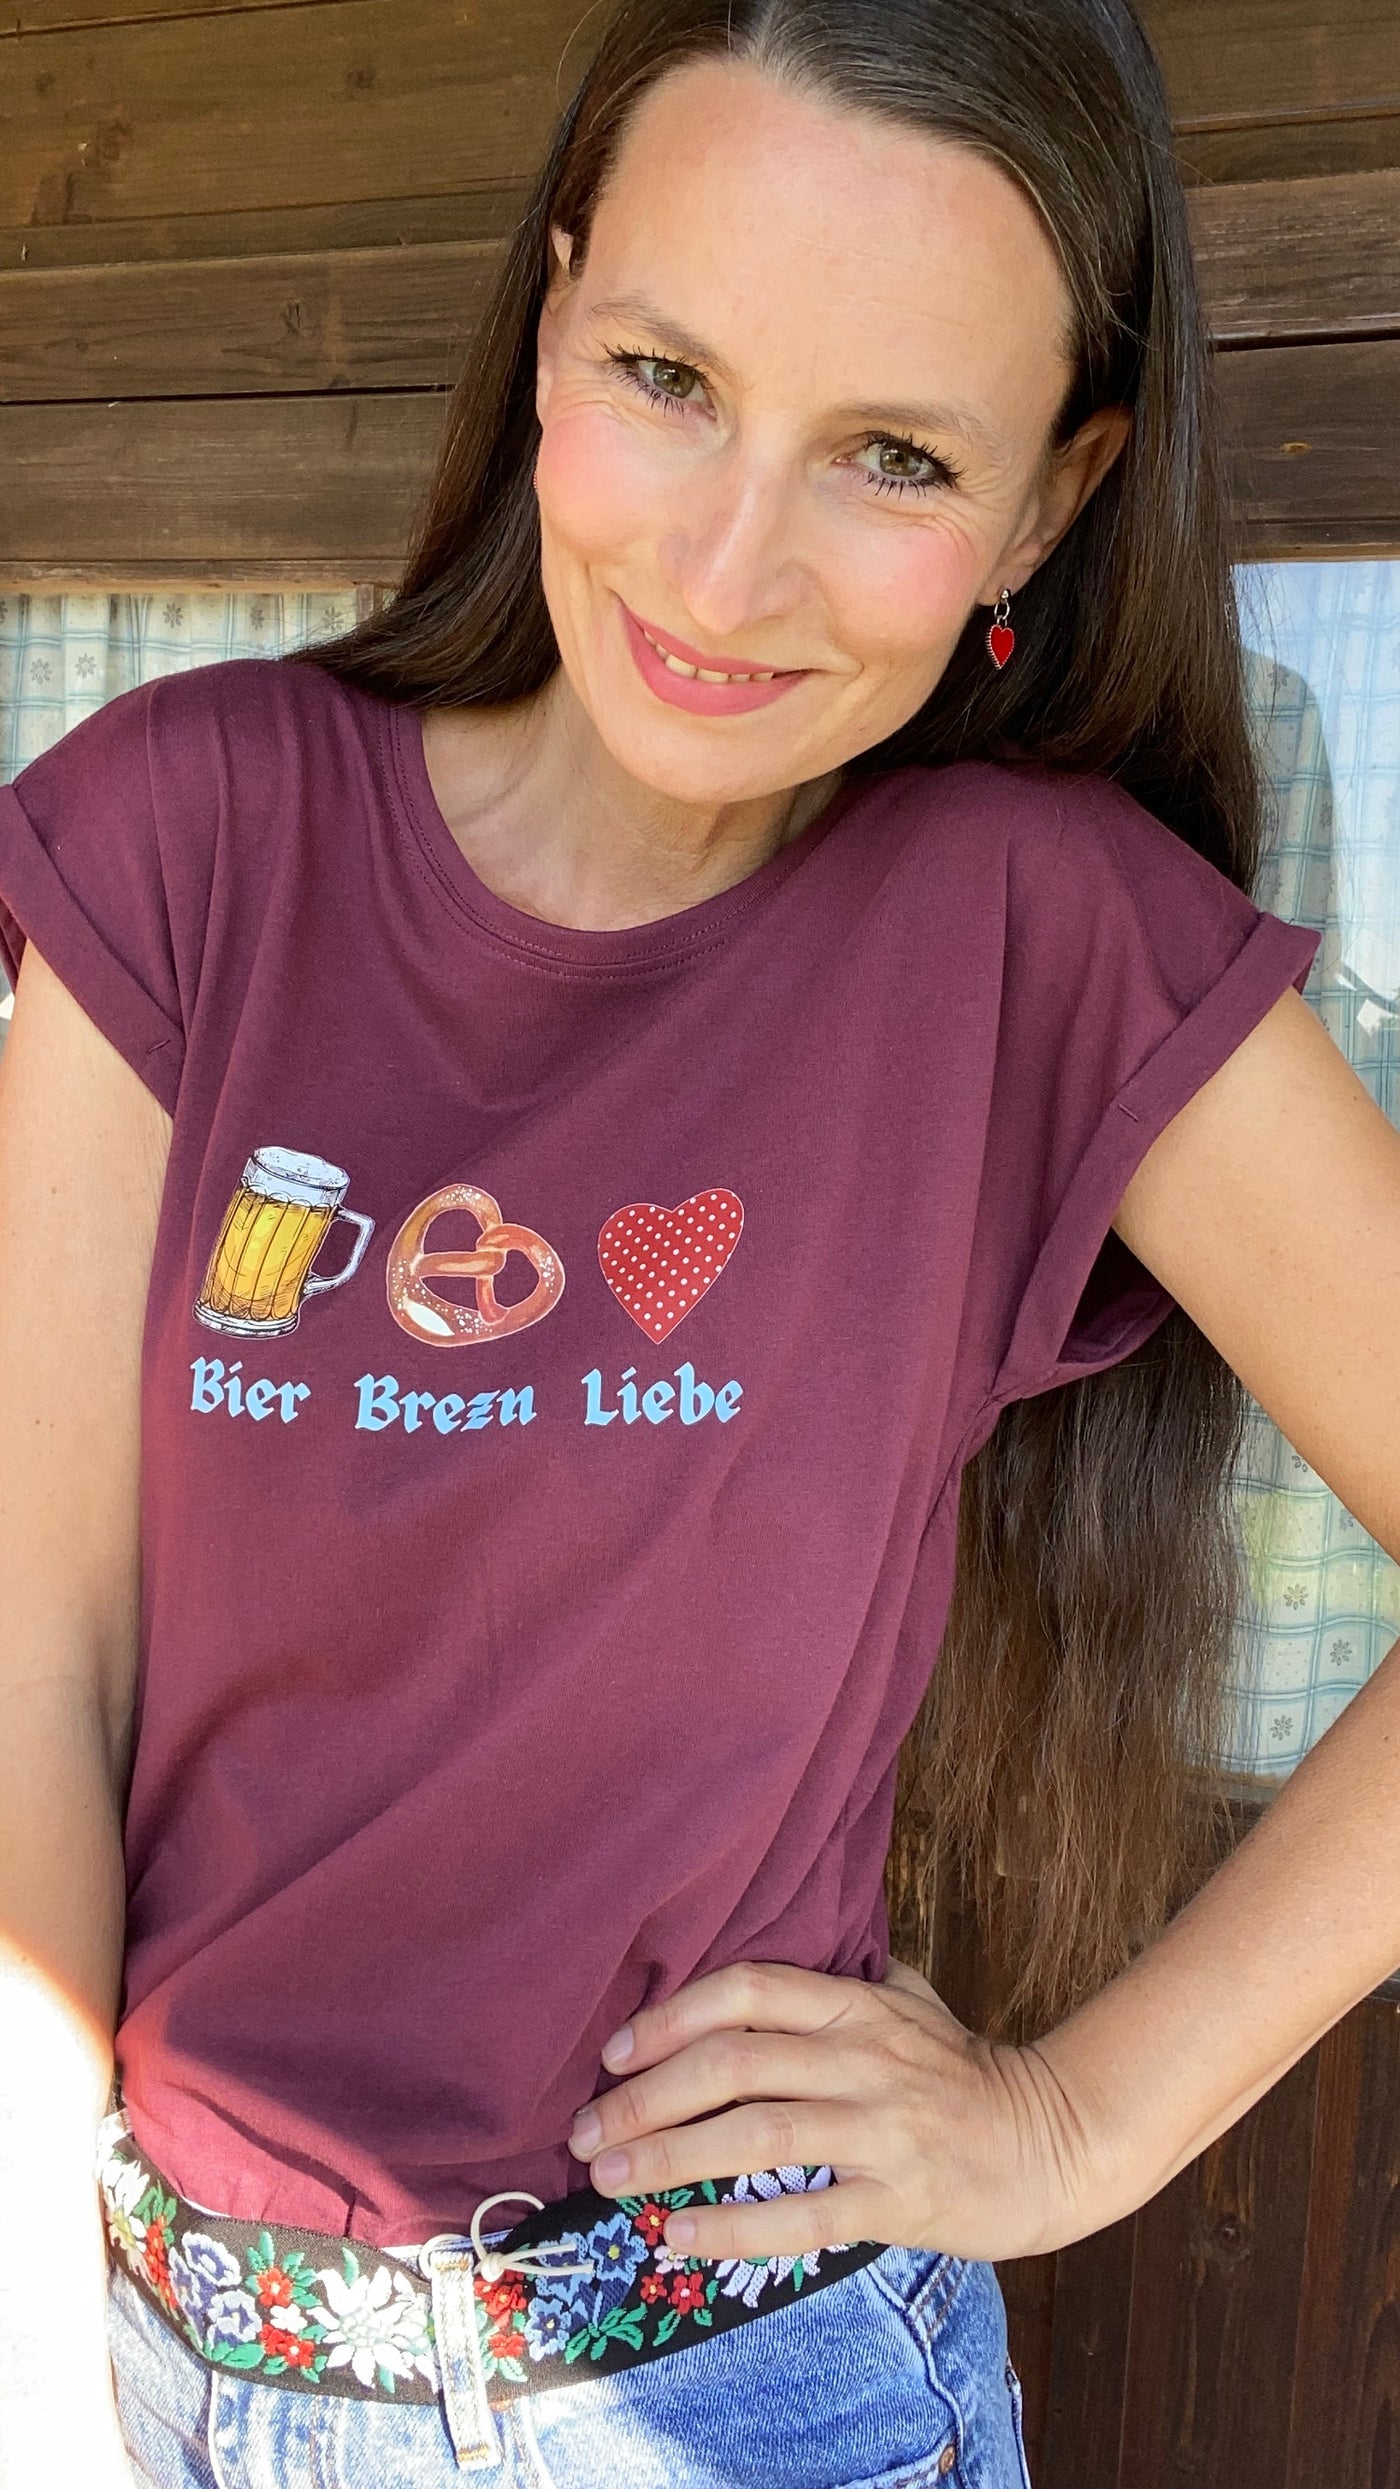 Bier Brezel Liebe T-Shirt in der Farbe lila